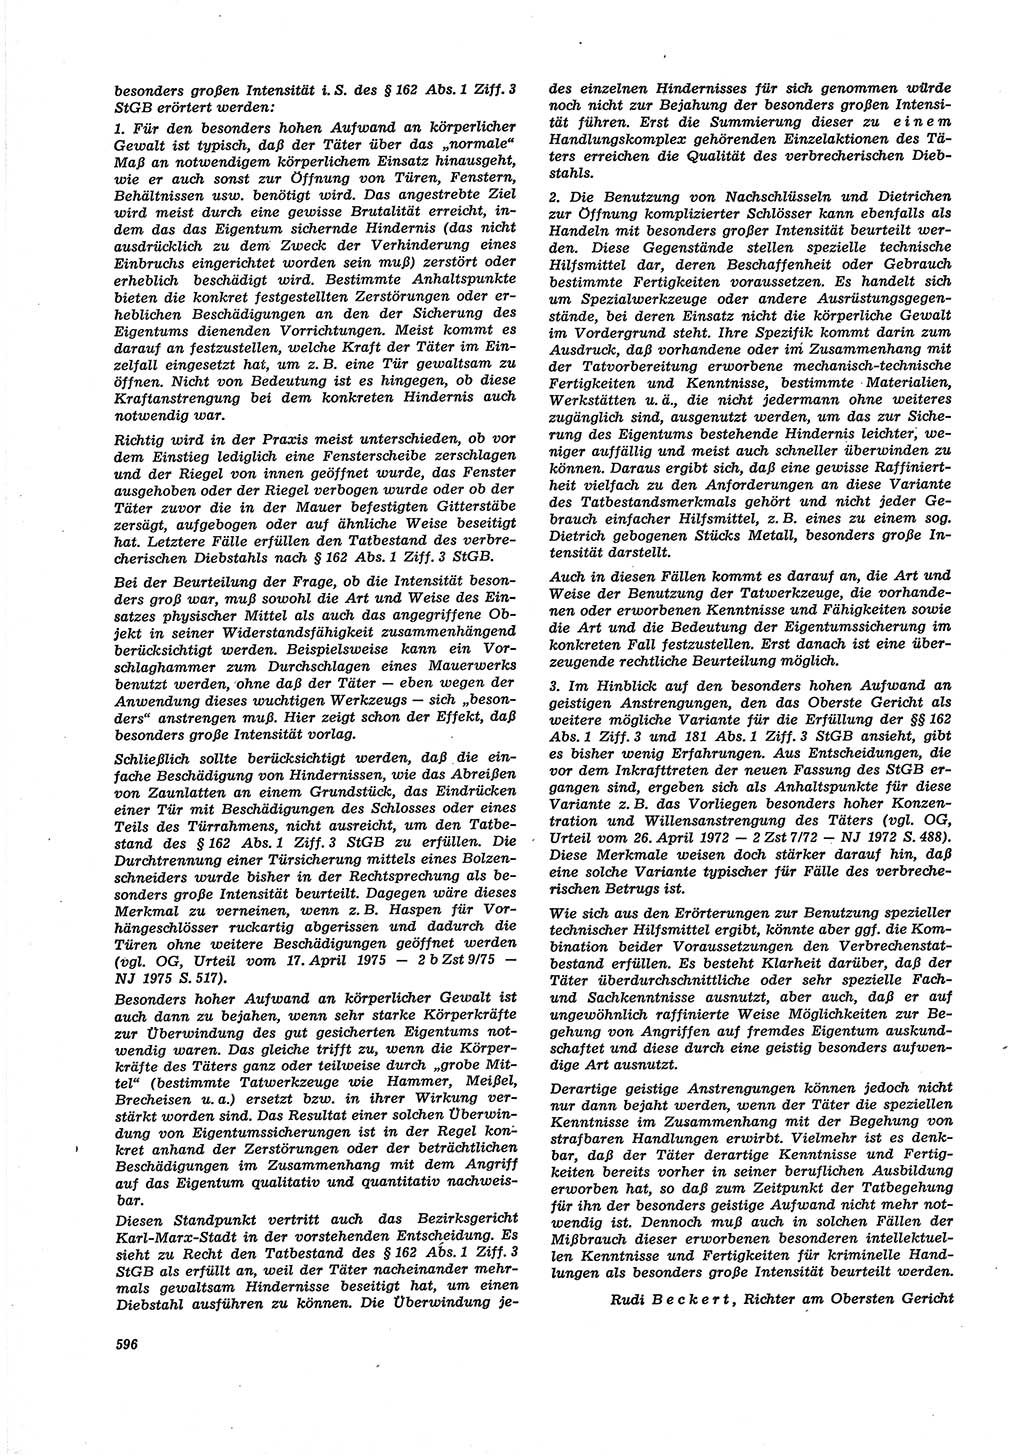 Neue Justiz (NJ), Zeitschrift für Recht und Rechtswissenschaft [Deutsche Demokratische Republik (DDR)], 30. Jahrgang 1976, Seite 596 (NJ DDR 1976, S. 596)